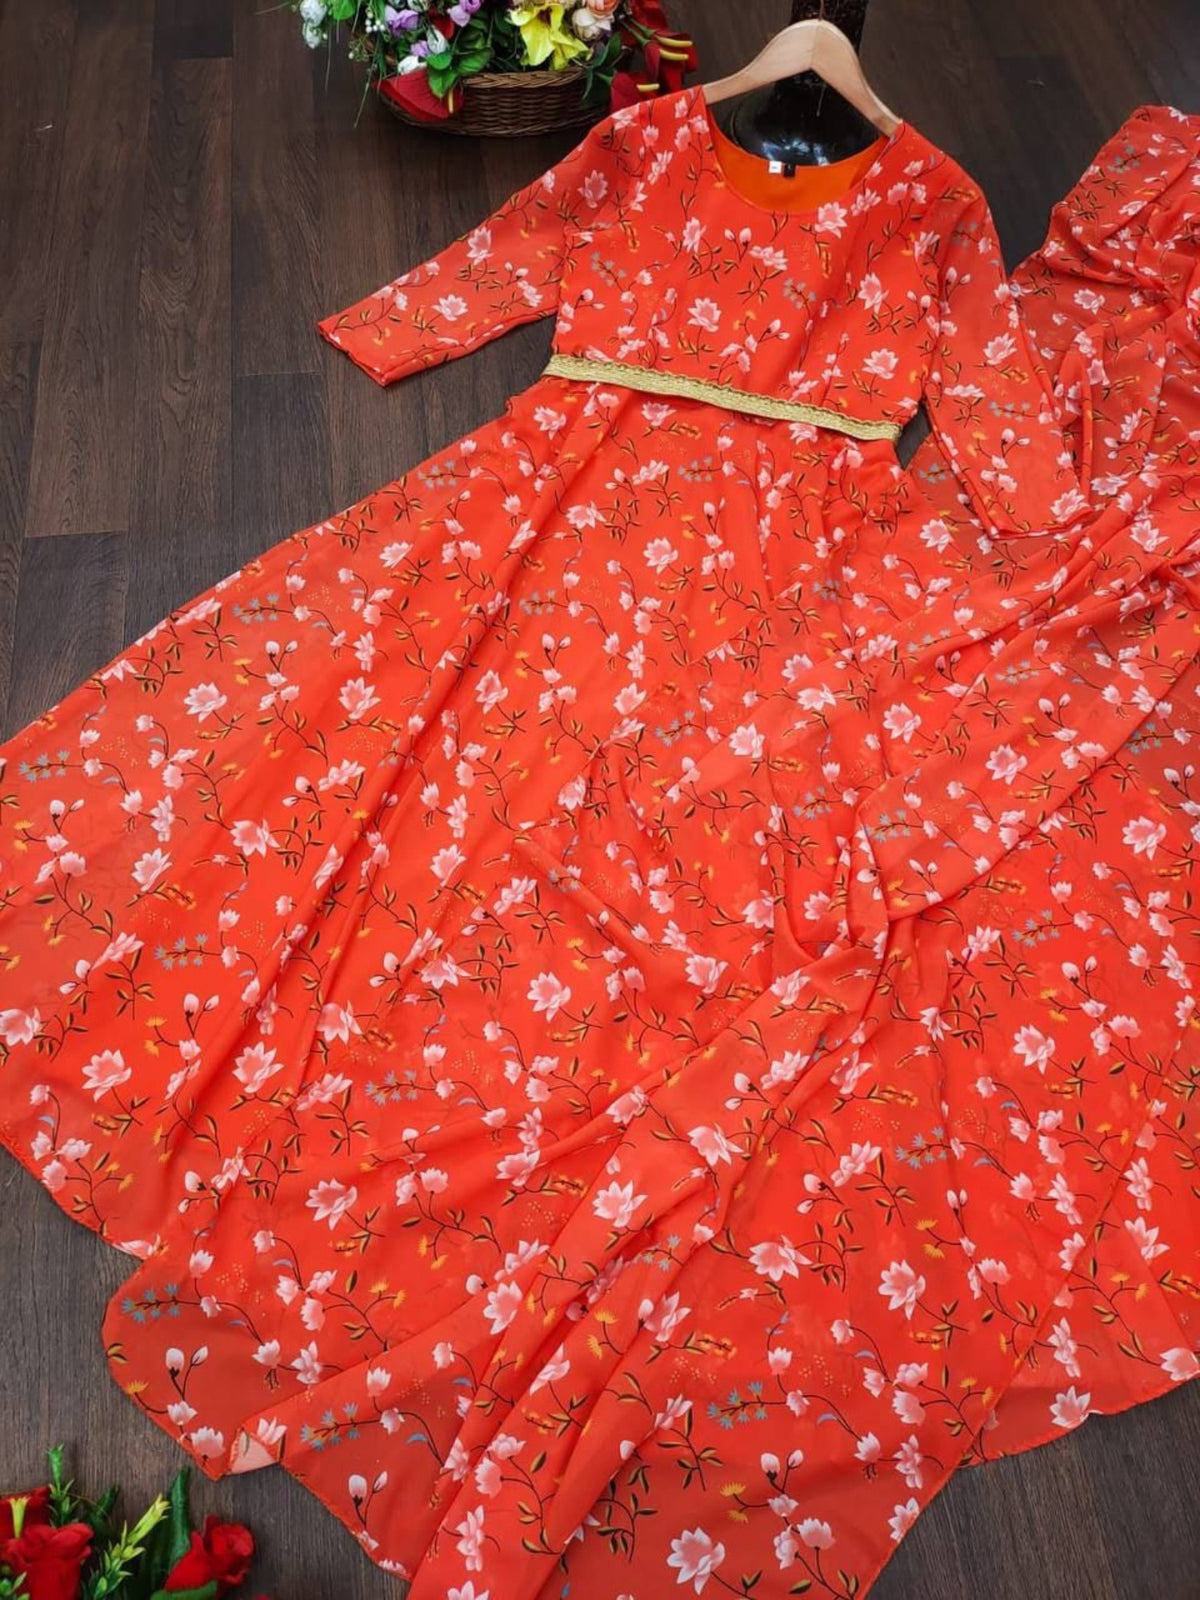 Болливудская индийская пакистанская этническая праздничная одежда женское мягкое чистое платье из искусственного жоржетта Dupptta и пояс